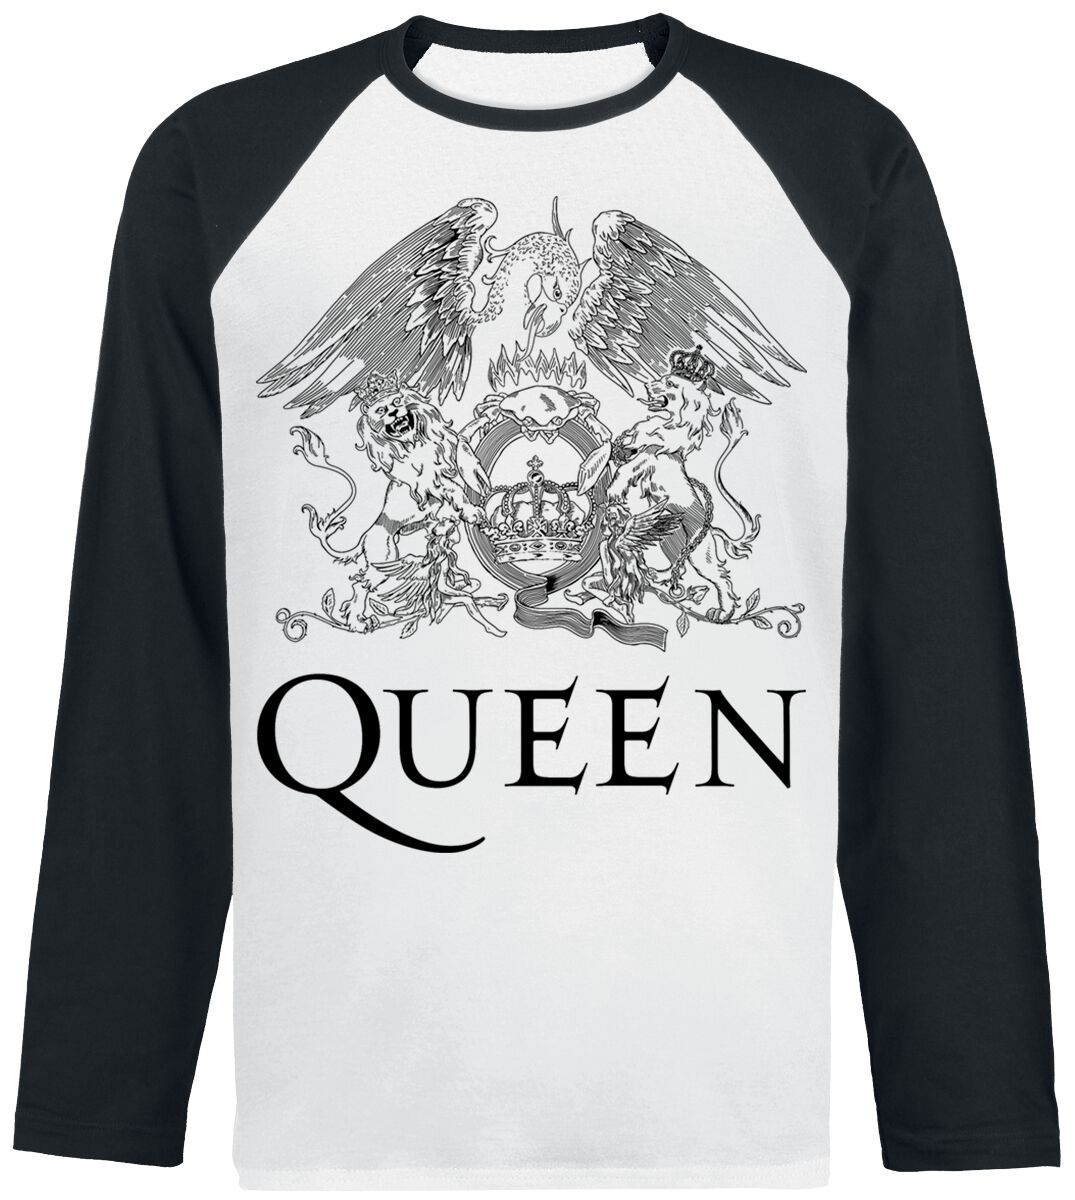 Queen Langarmshirt - Crest Vintage - S bis XXL - für Männer - Größe XXL - weiß/schwarz  - Lizenziertes Merchandise!